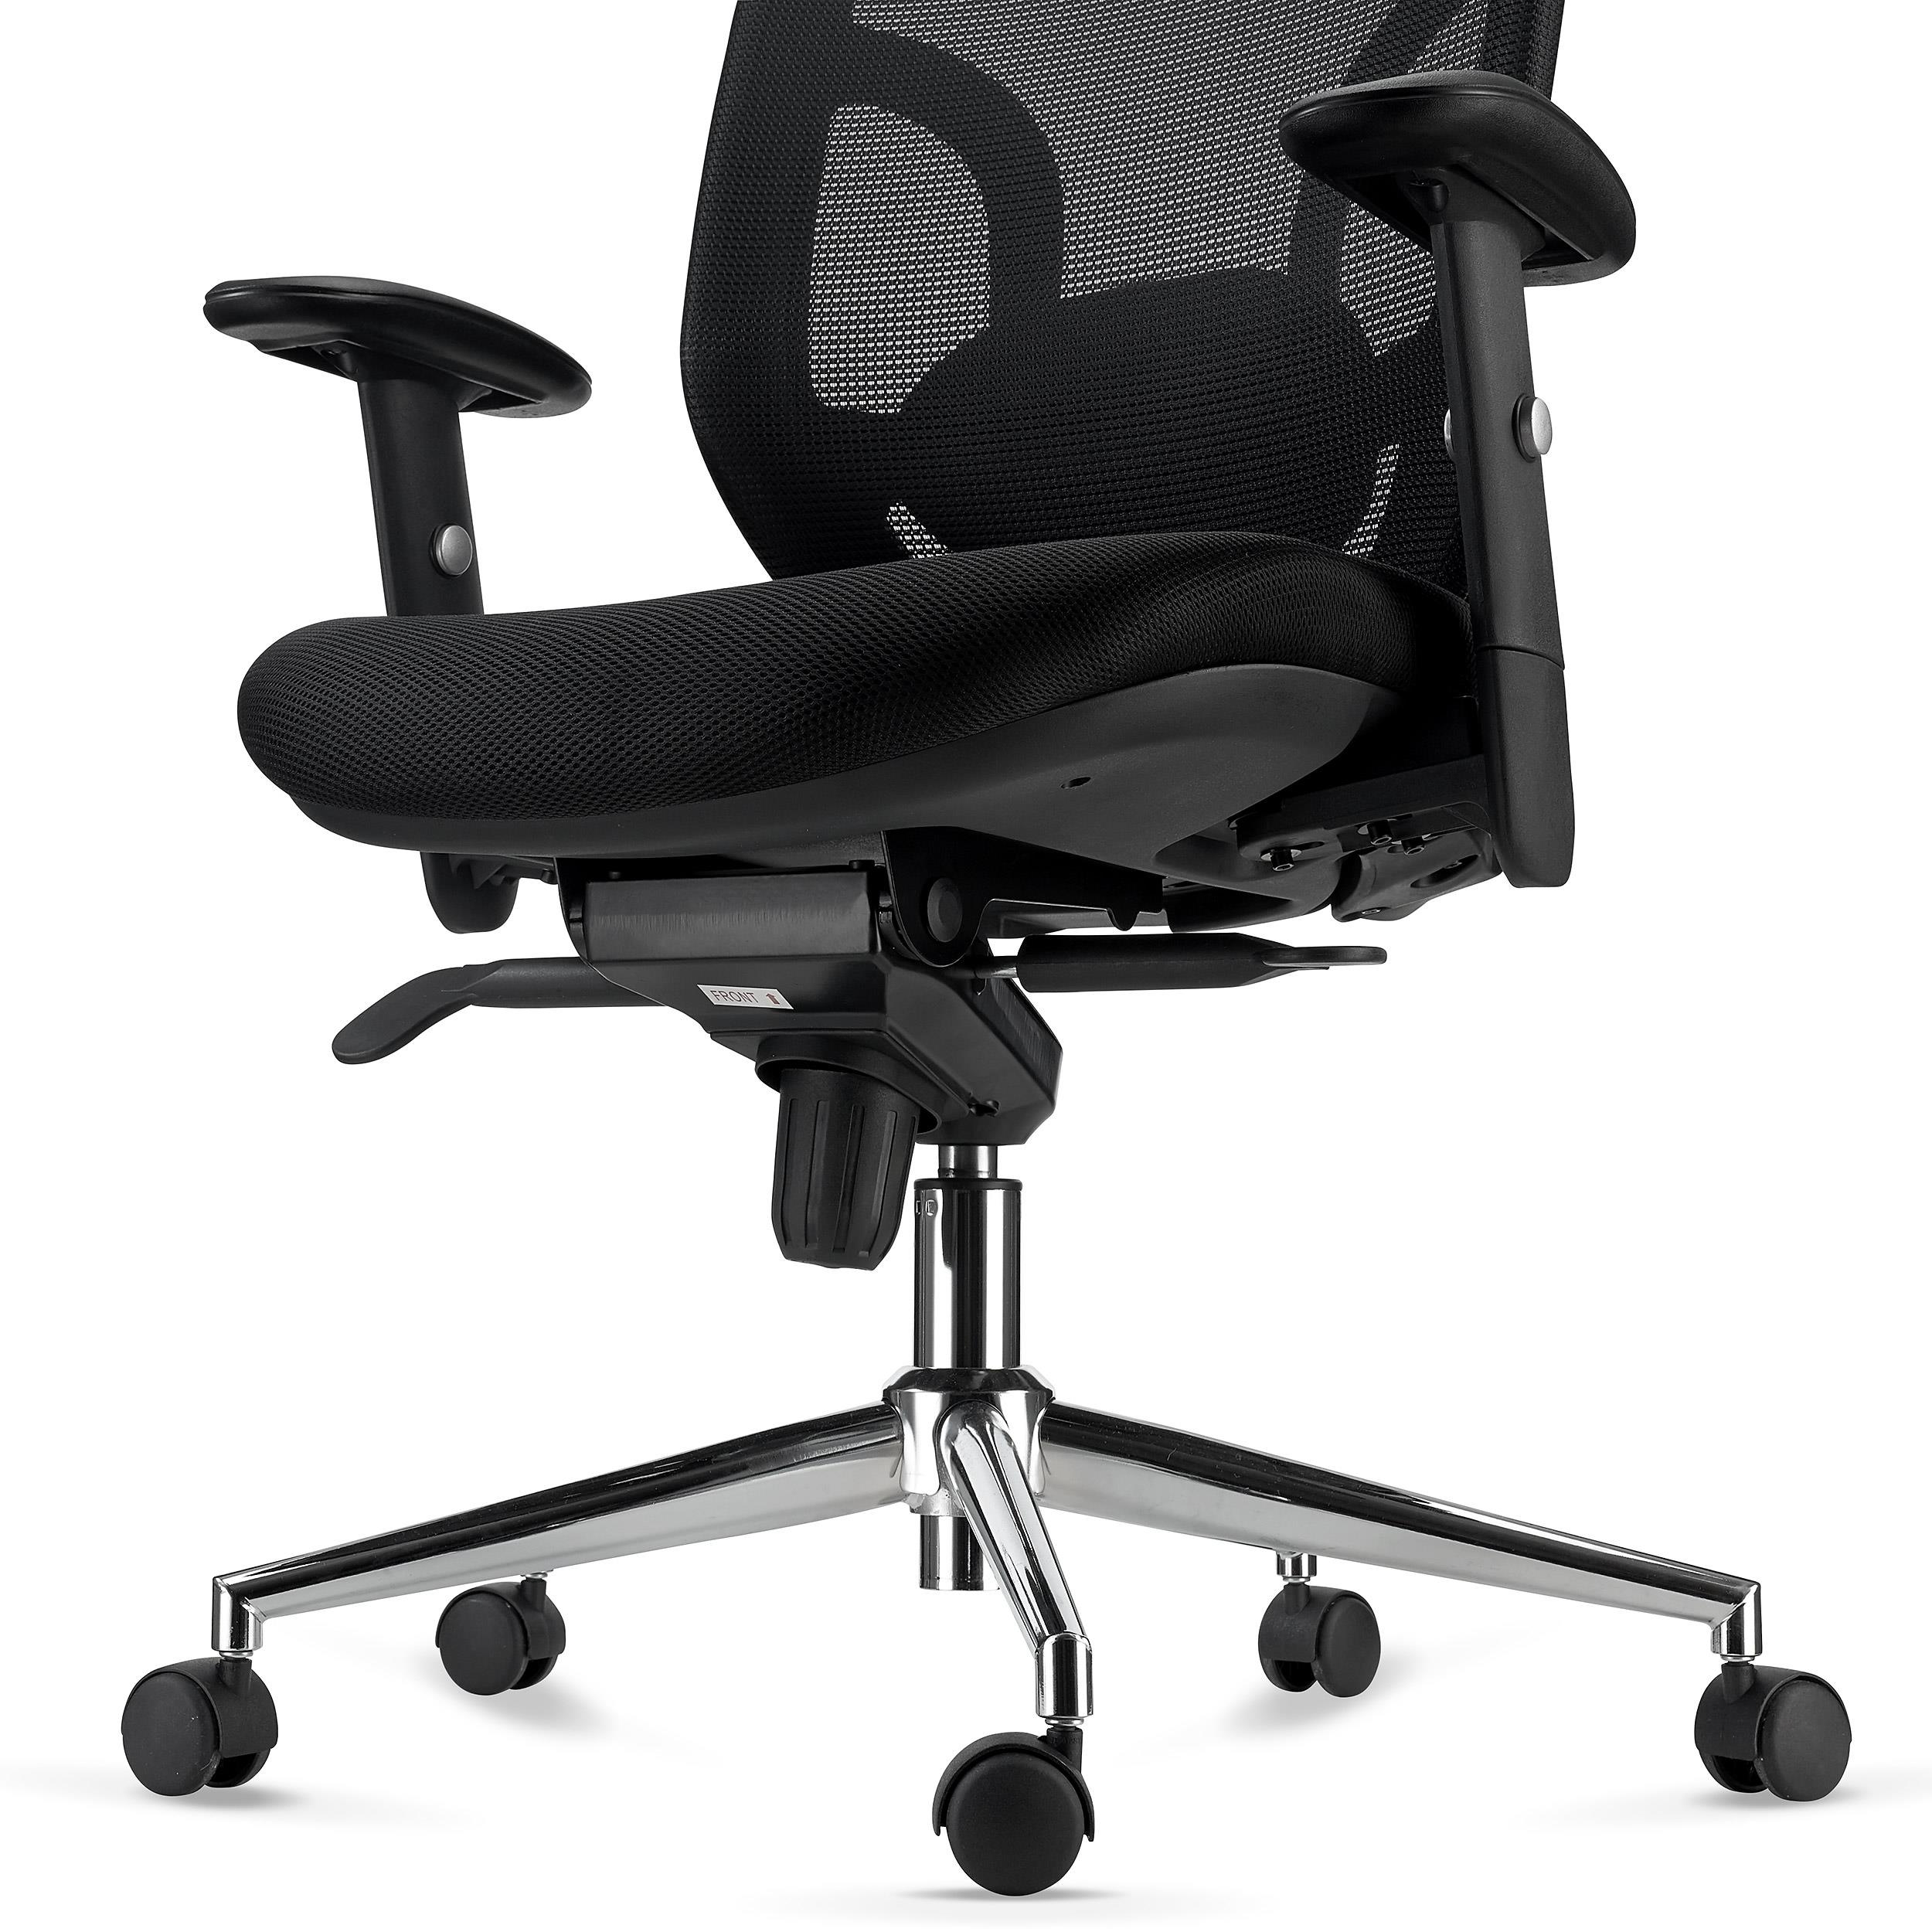 Chaise d'ordinateur NORIS avec un Design Gamer sublime, Revêtement en Cuir,  Utilisation Professionnelle 8h, Blanc 